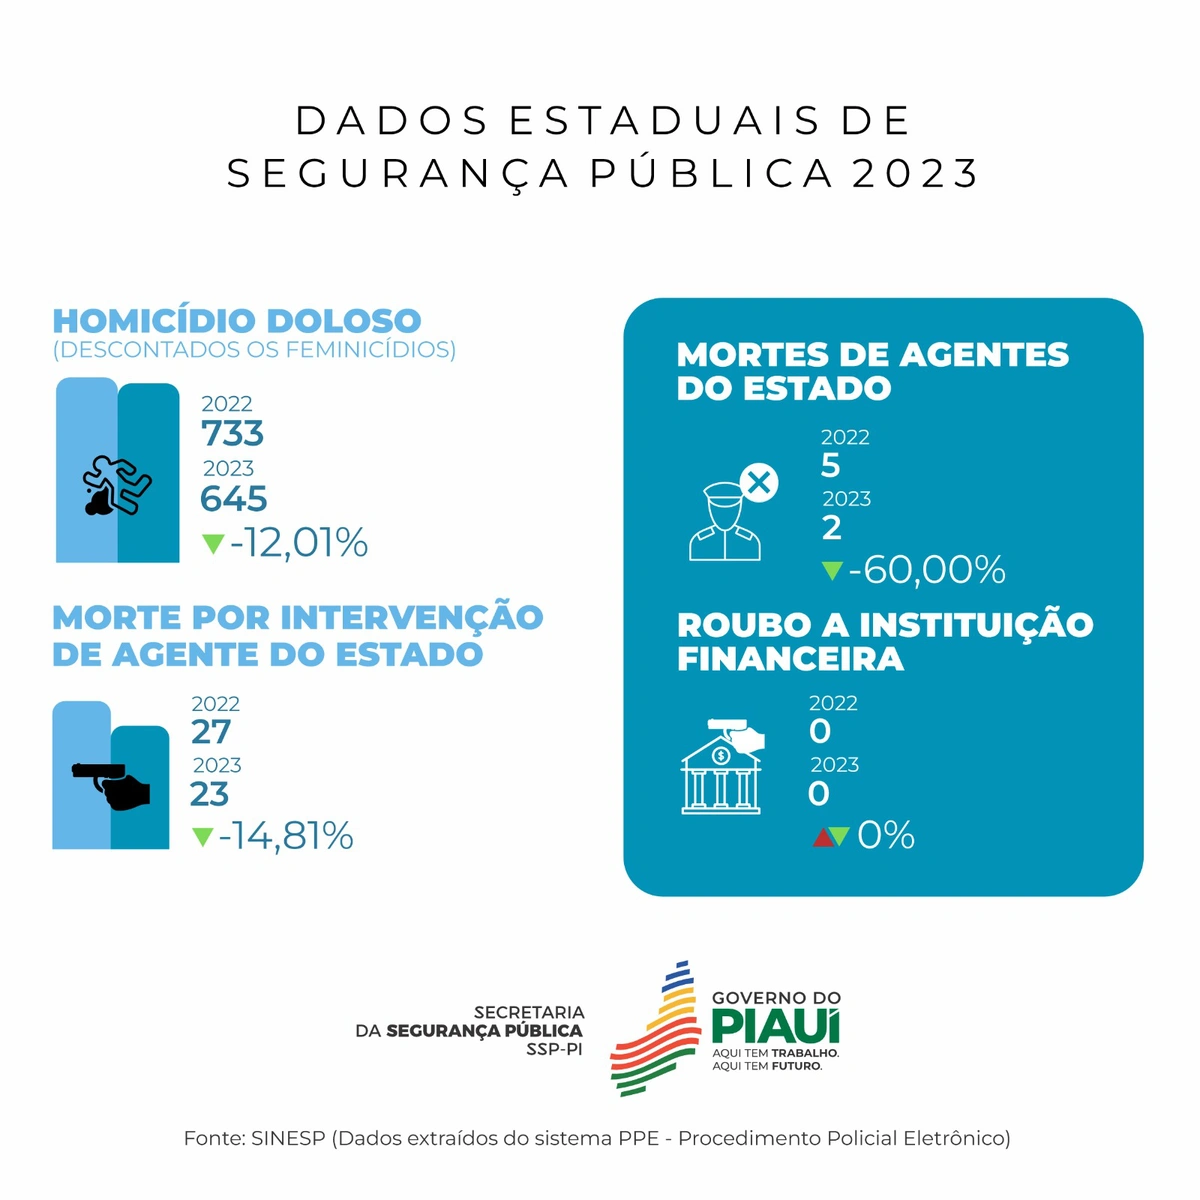 Dados da Segurança Pública em relação aos homicídios dolosos em 2023